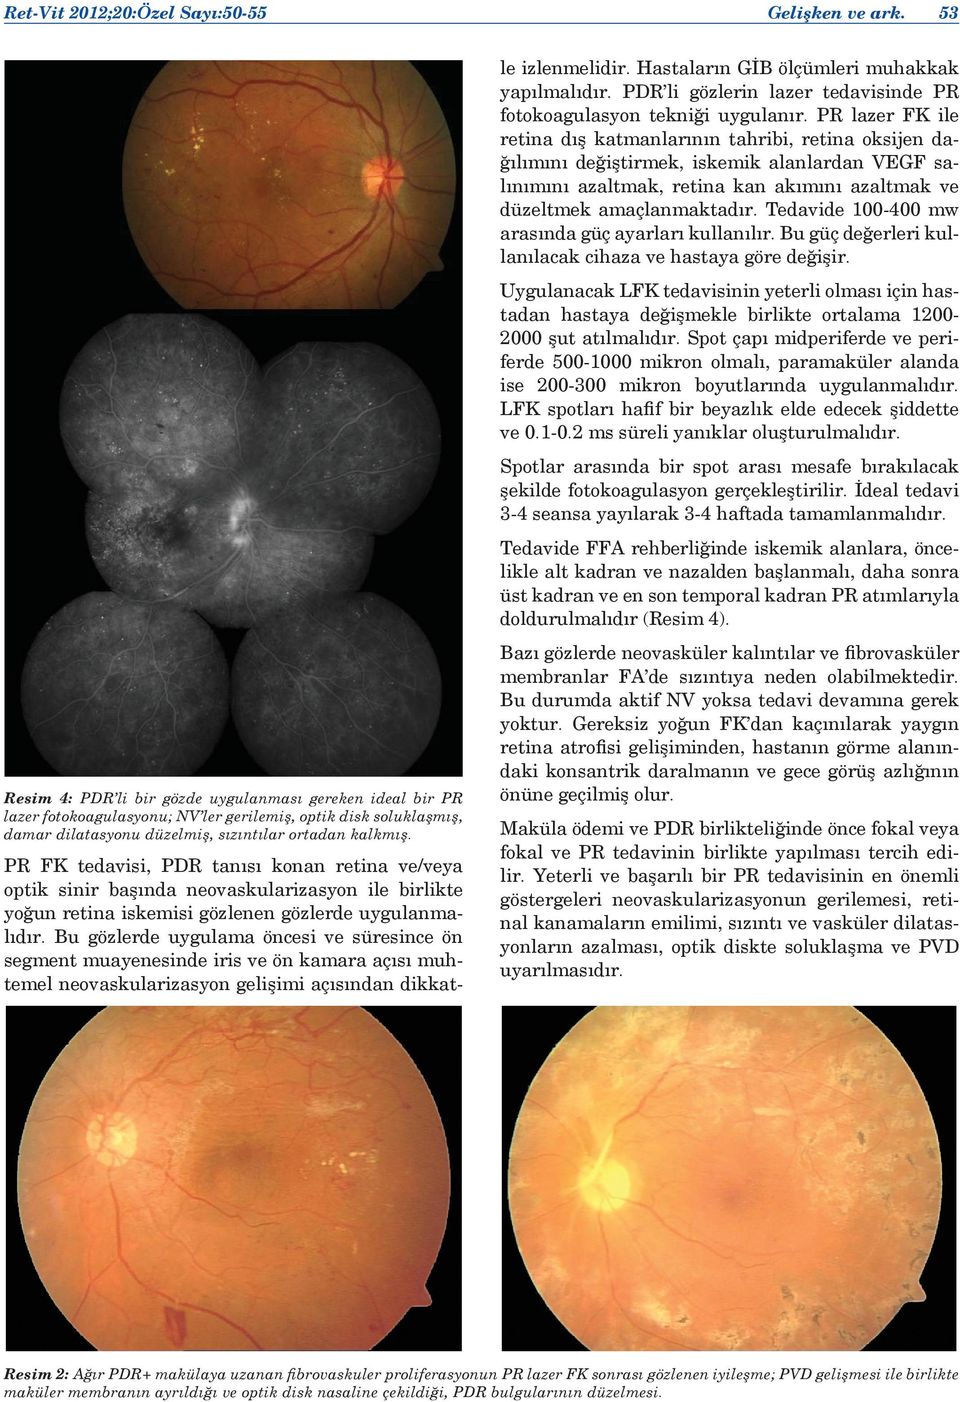 PR FK tedavisi, PDR tanısı konan retina ve/veya optik sinir başında neovaskularizasyon ile birlikte yoğun retina iskemisi gözlenen gözlerde uygulanmalıdır.